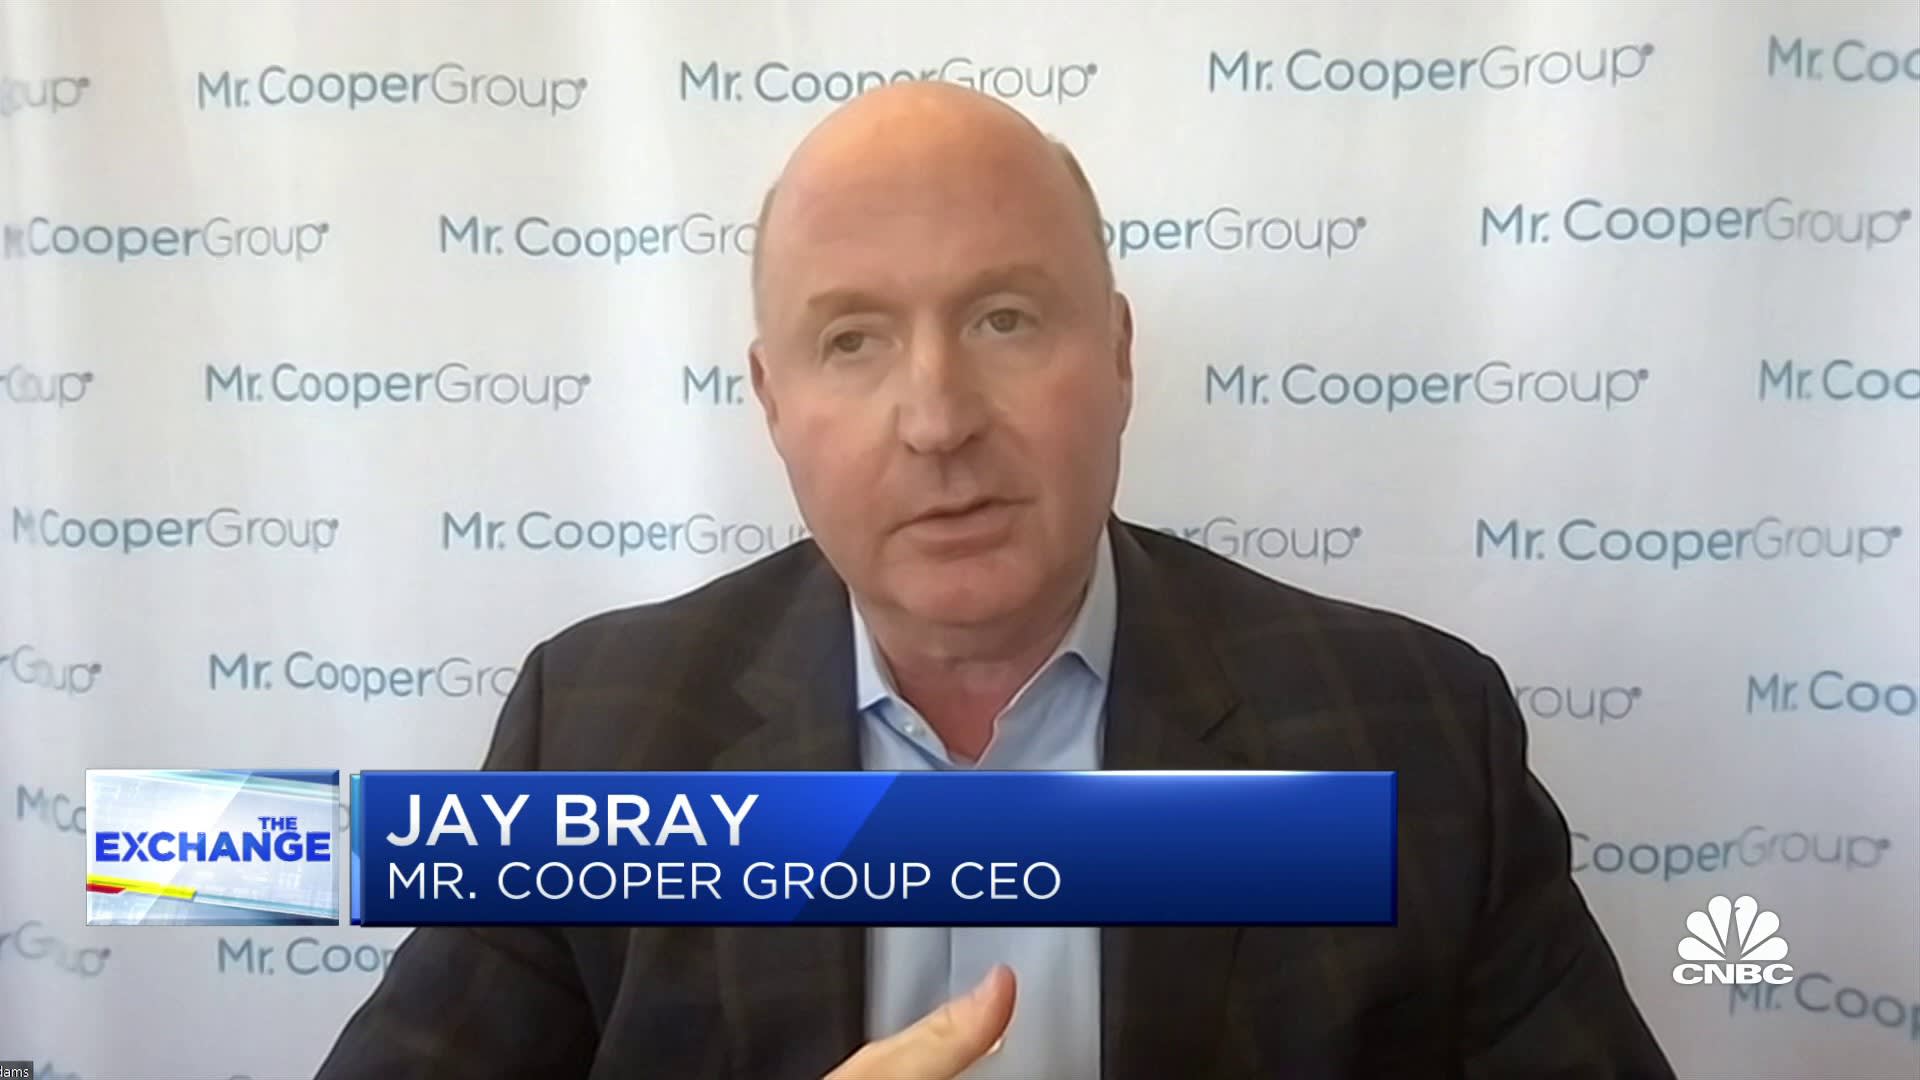 السيد Cooper Group CEO على ارتفاع معدلات الرهن العقاري